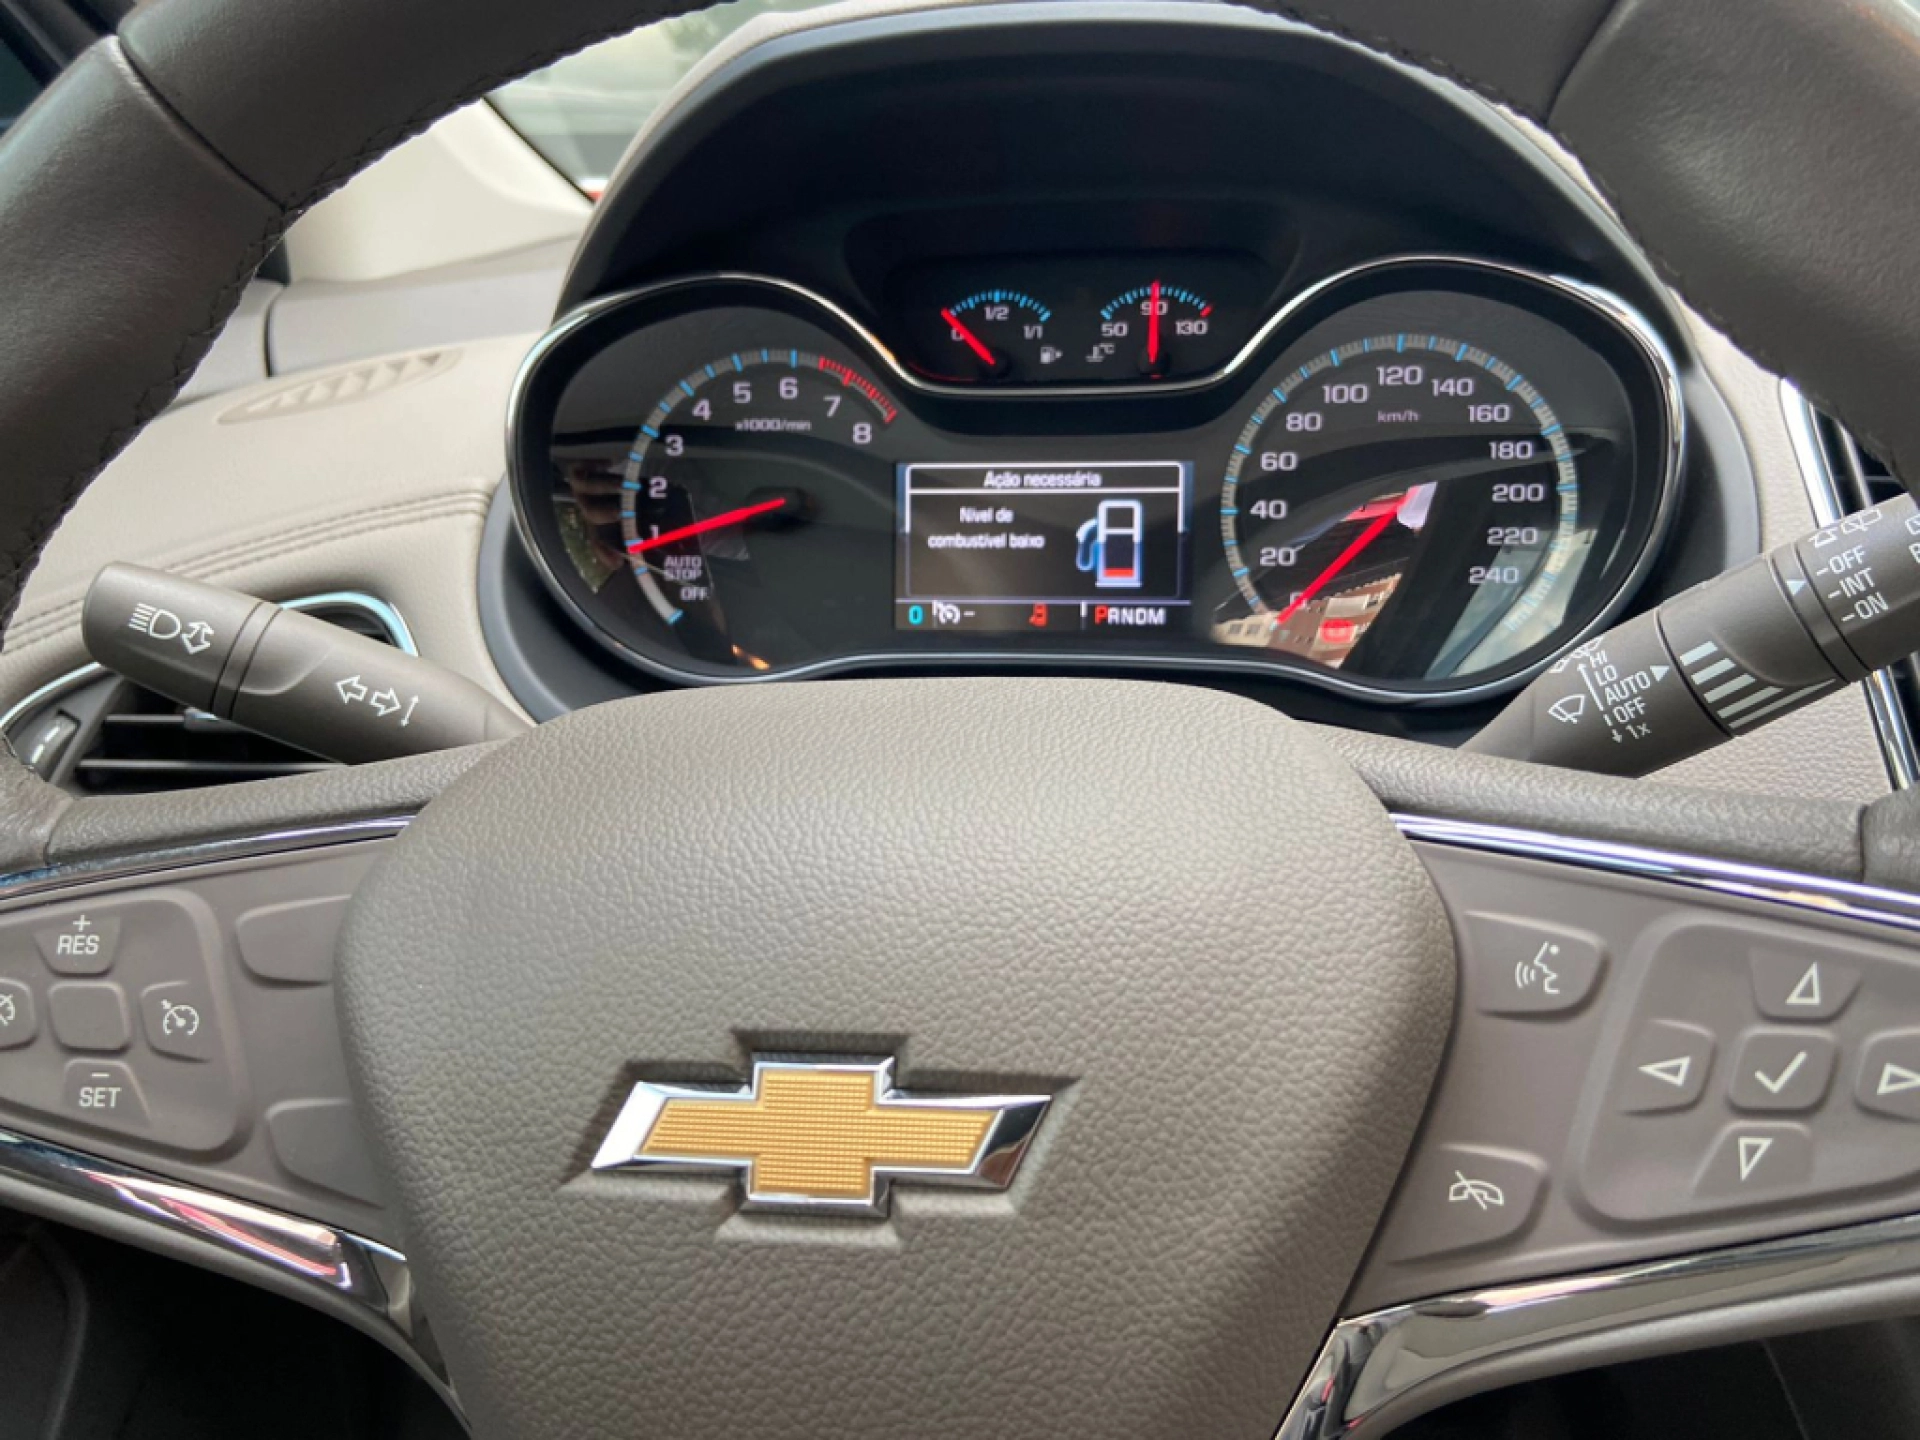 Chevrolet Cruze 1.4 2019